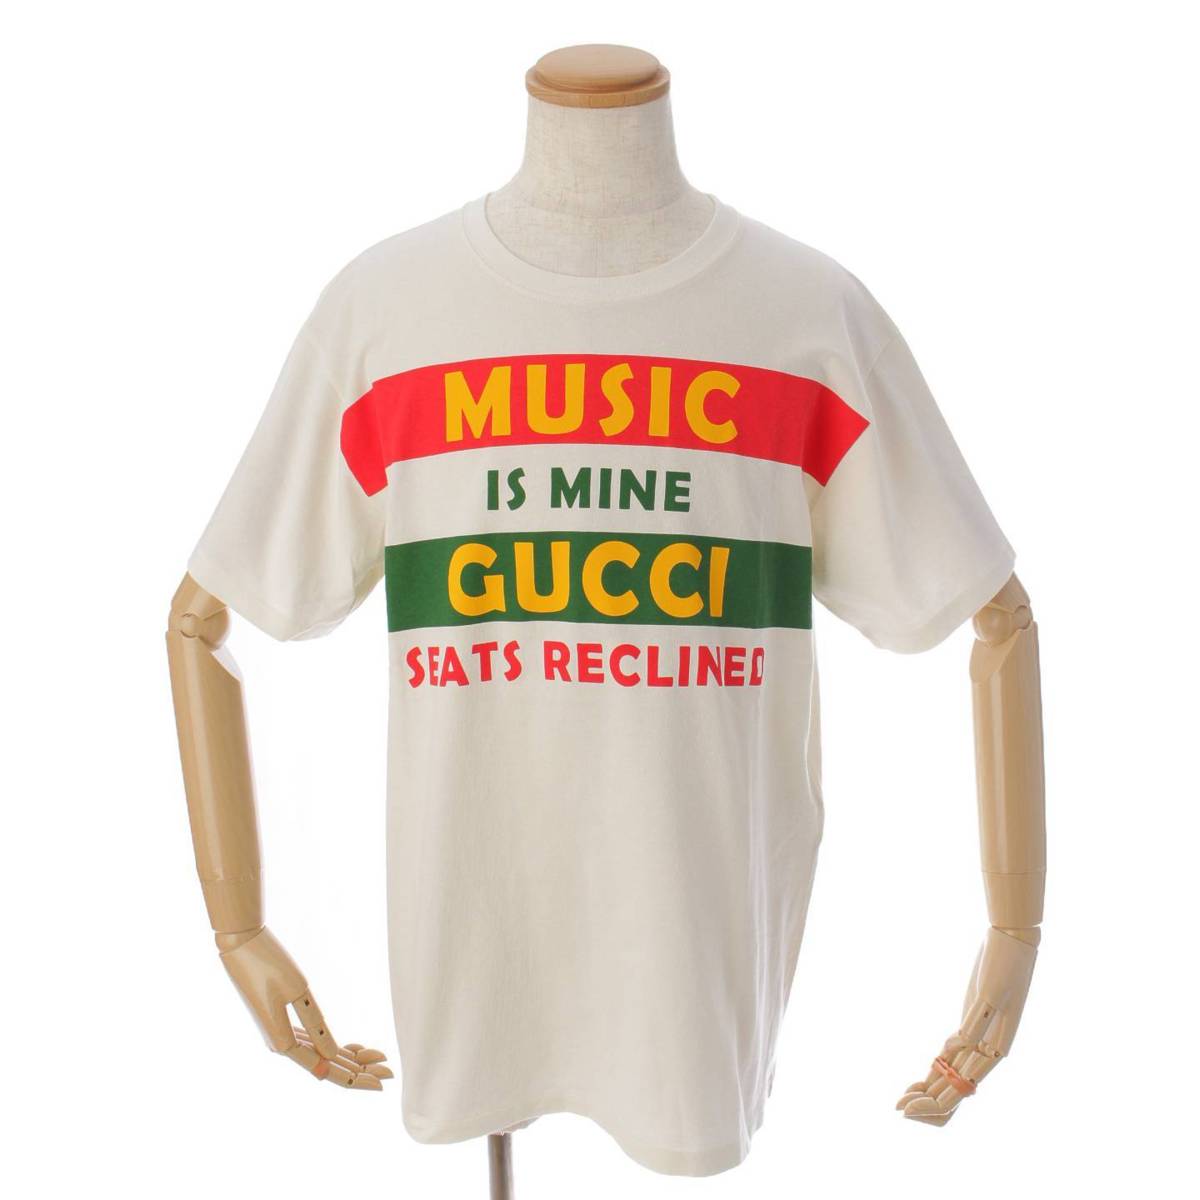 グッチ(Gucci) 100周年 MUSIC IS MINE プリント Tシャツ トップス 615044 ホワイト M